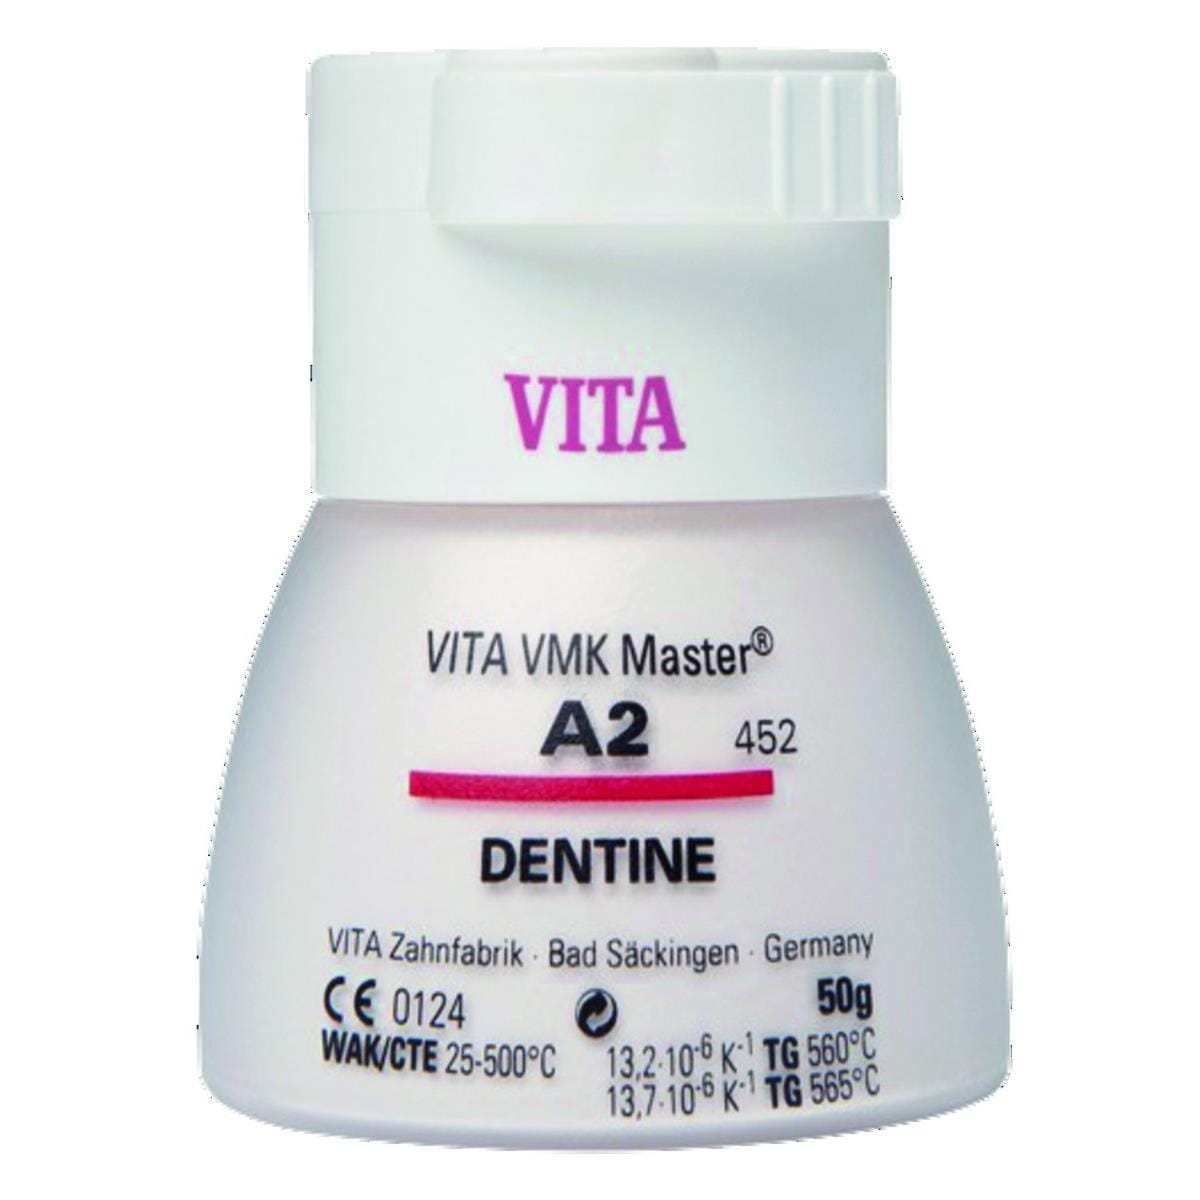 VMK Master VITA - Dentine - 5M3 - Le flacon de 50 g